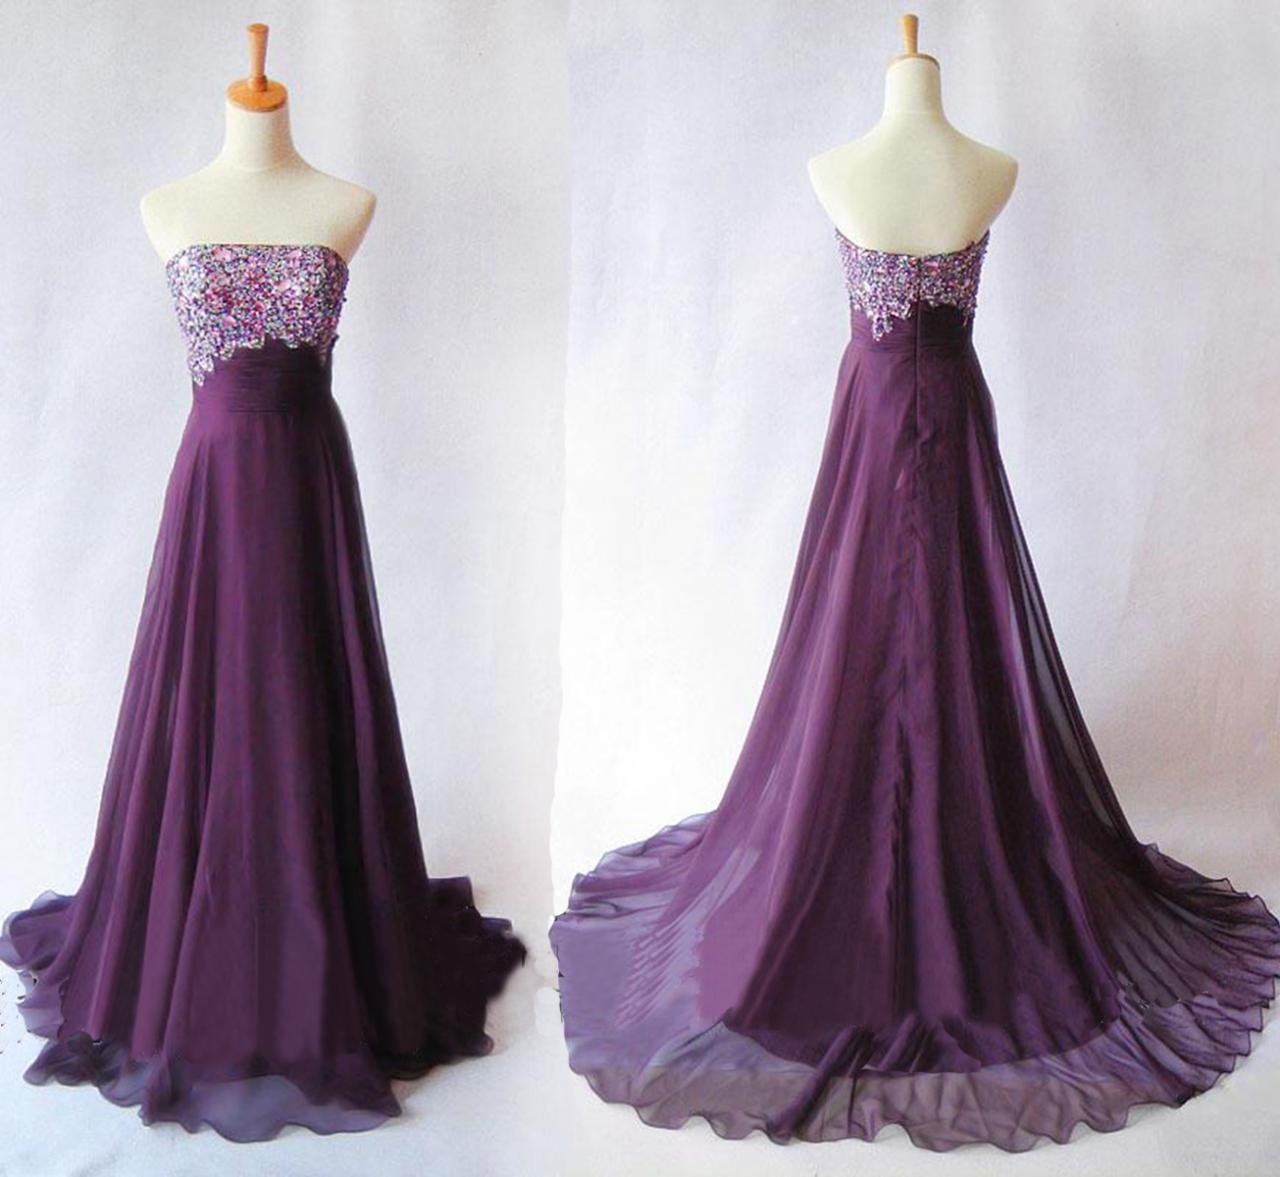 Beaded Purple Long Prom Dress,strapless Corset Neckline Empire Waist Chiffon Floor Length Women Formal Homecoming Dress,long Evening Dress,party